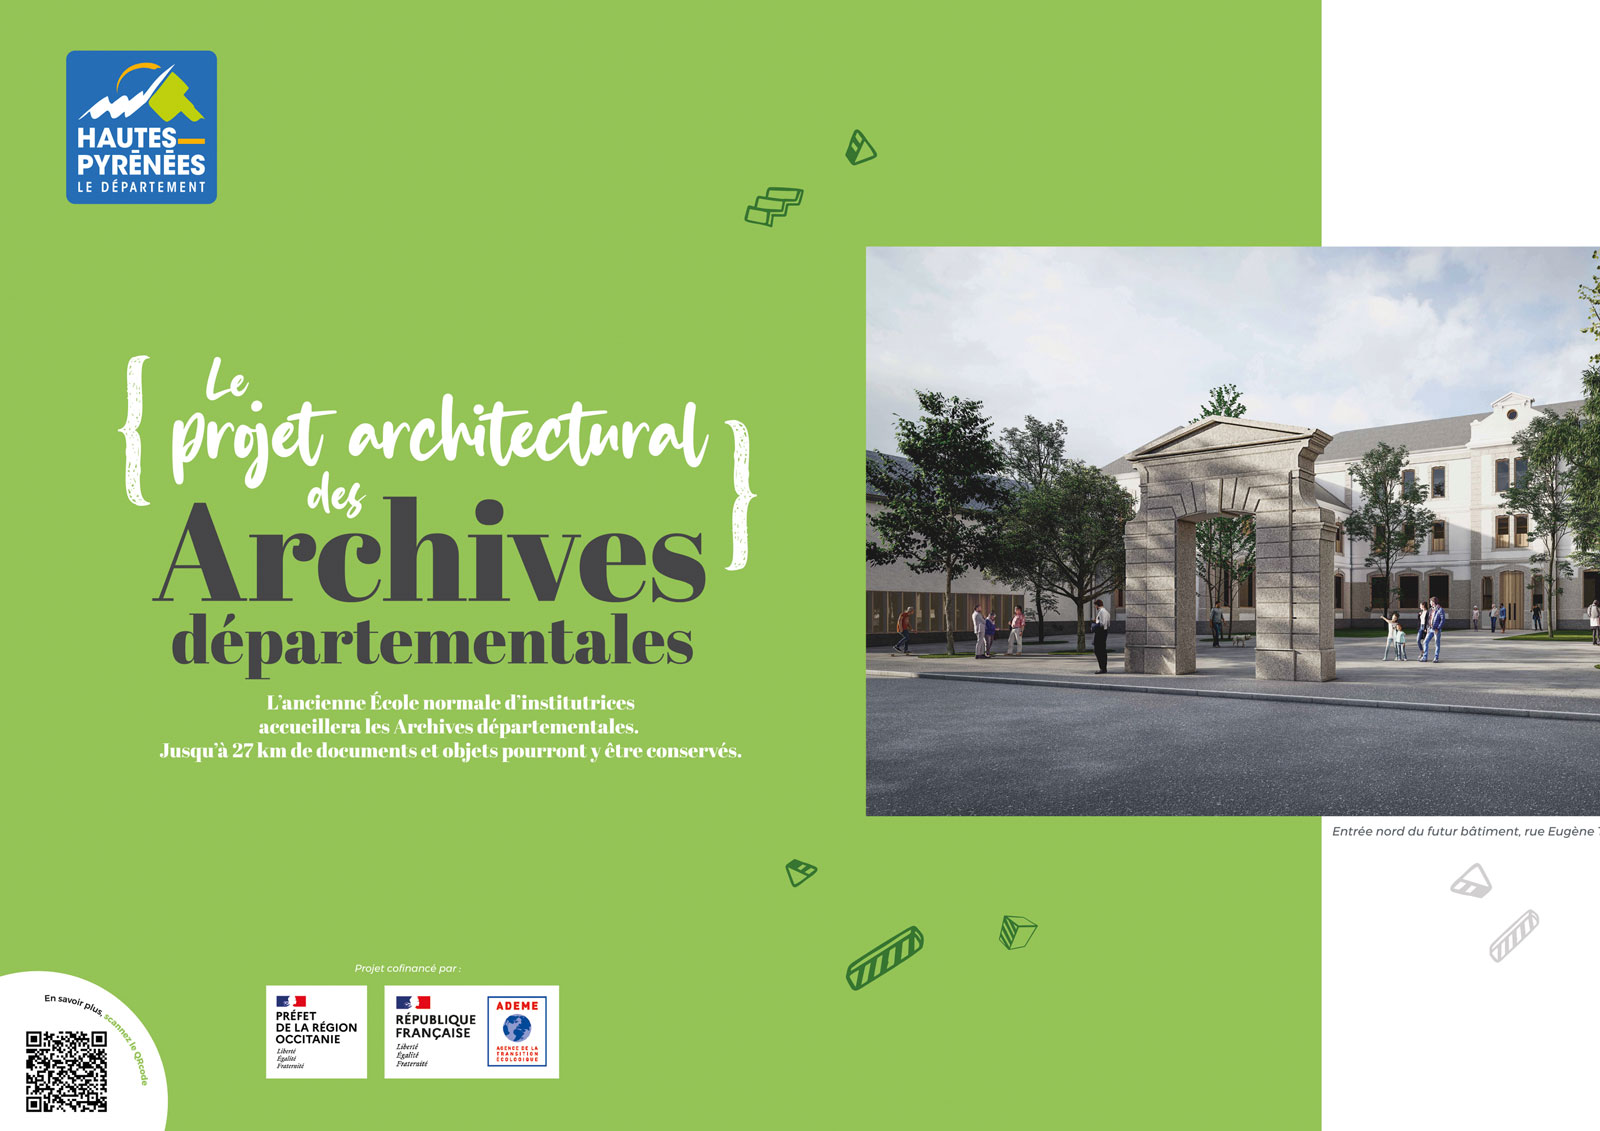 Le Département des Hautes-Pyrénées à confié à l'agence So'Happy, la conception et la création d'une communication "chantier" pour le futur bâtiment des Archives départementales